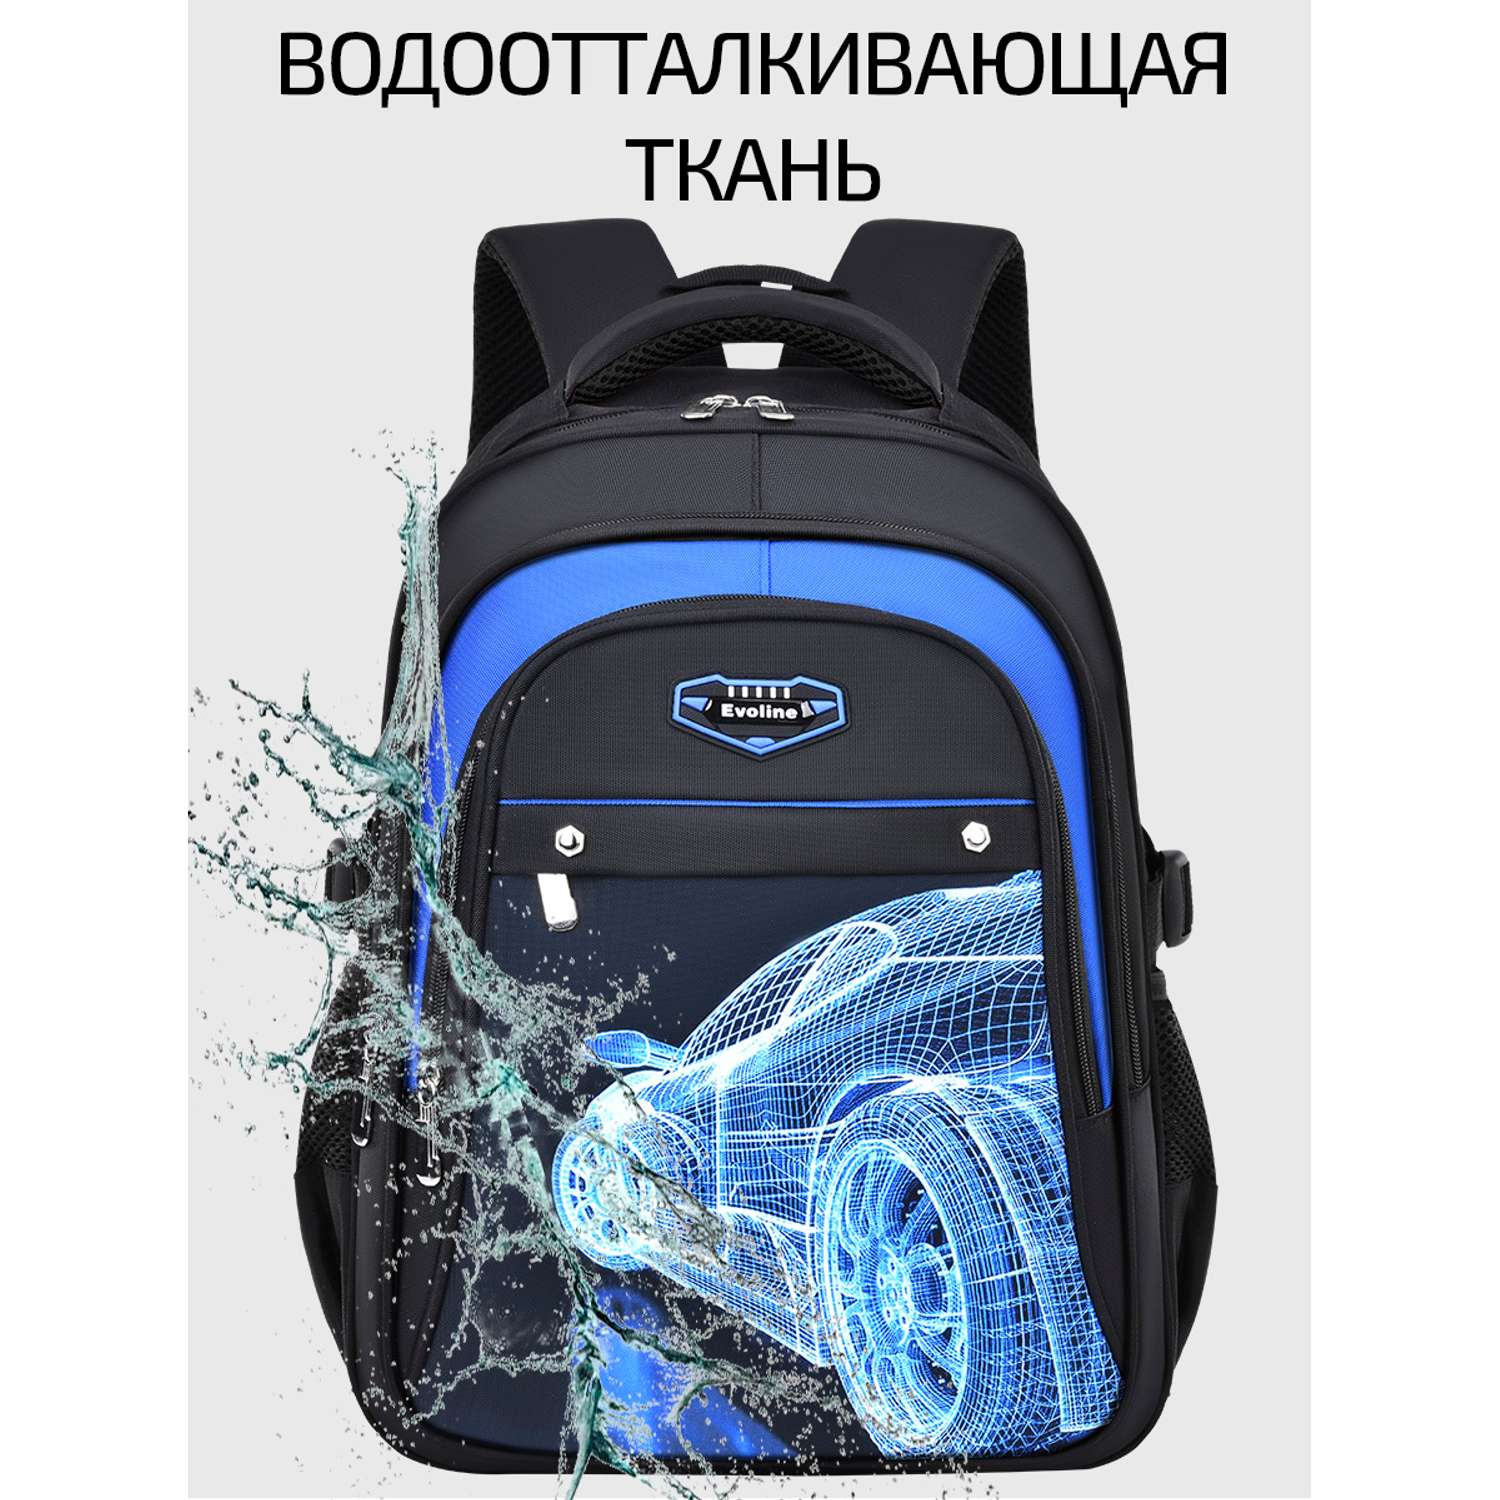 рюкзак школьный Evoline Черный гоночная синяя машина вид сзади 45 см спинка EVO-CAR-4-45 - фото 6